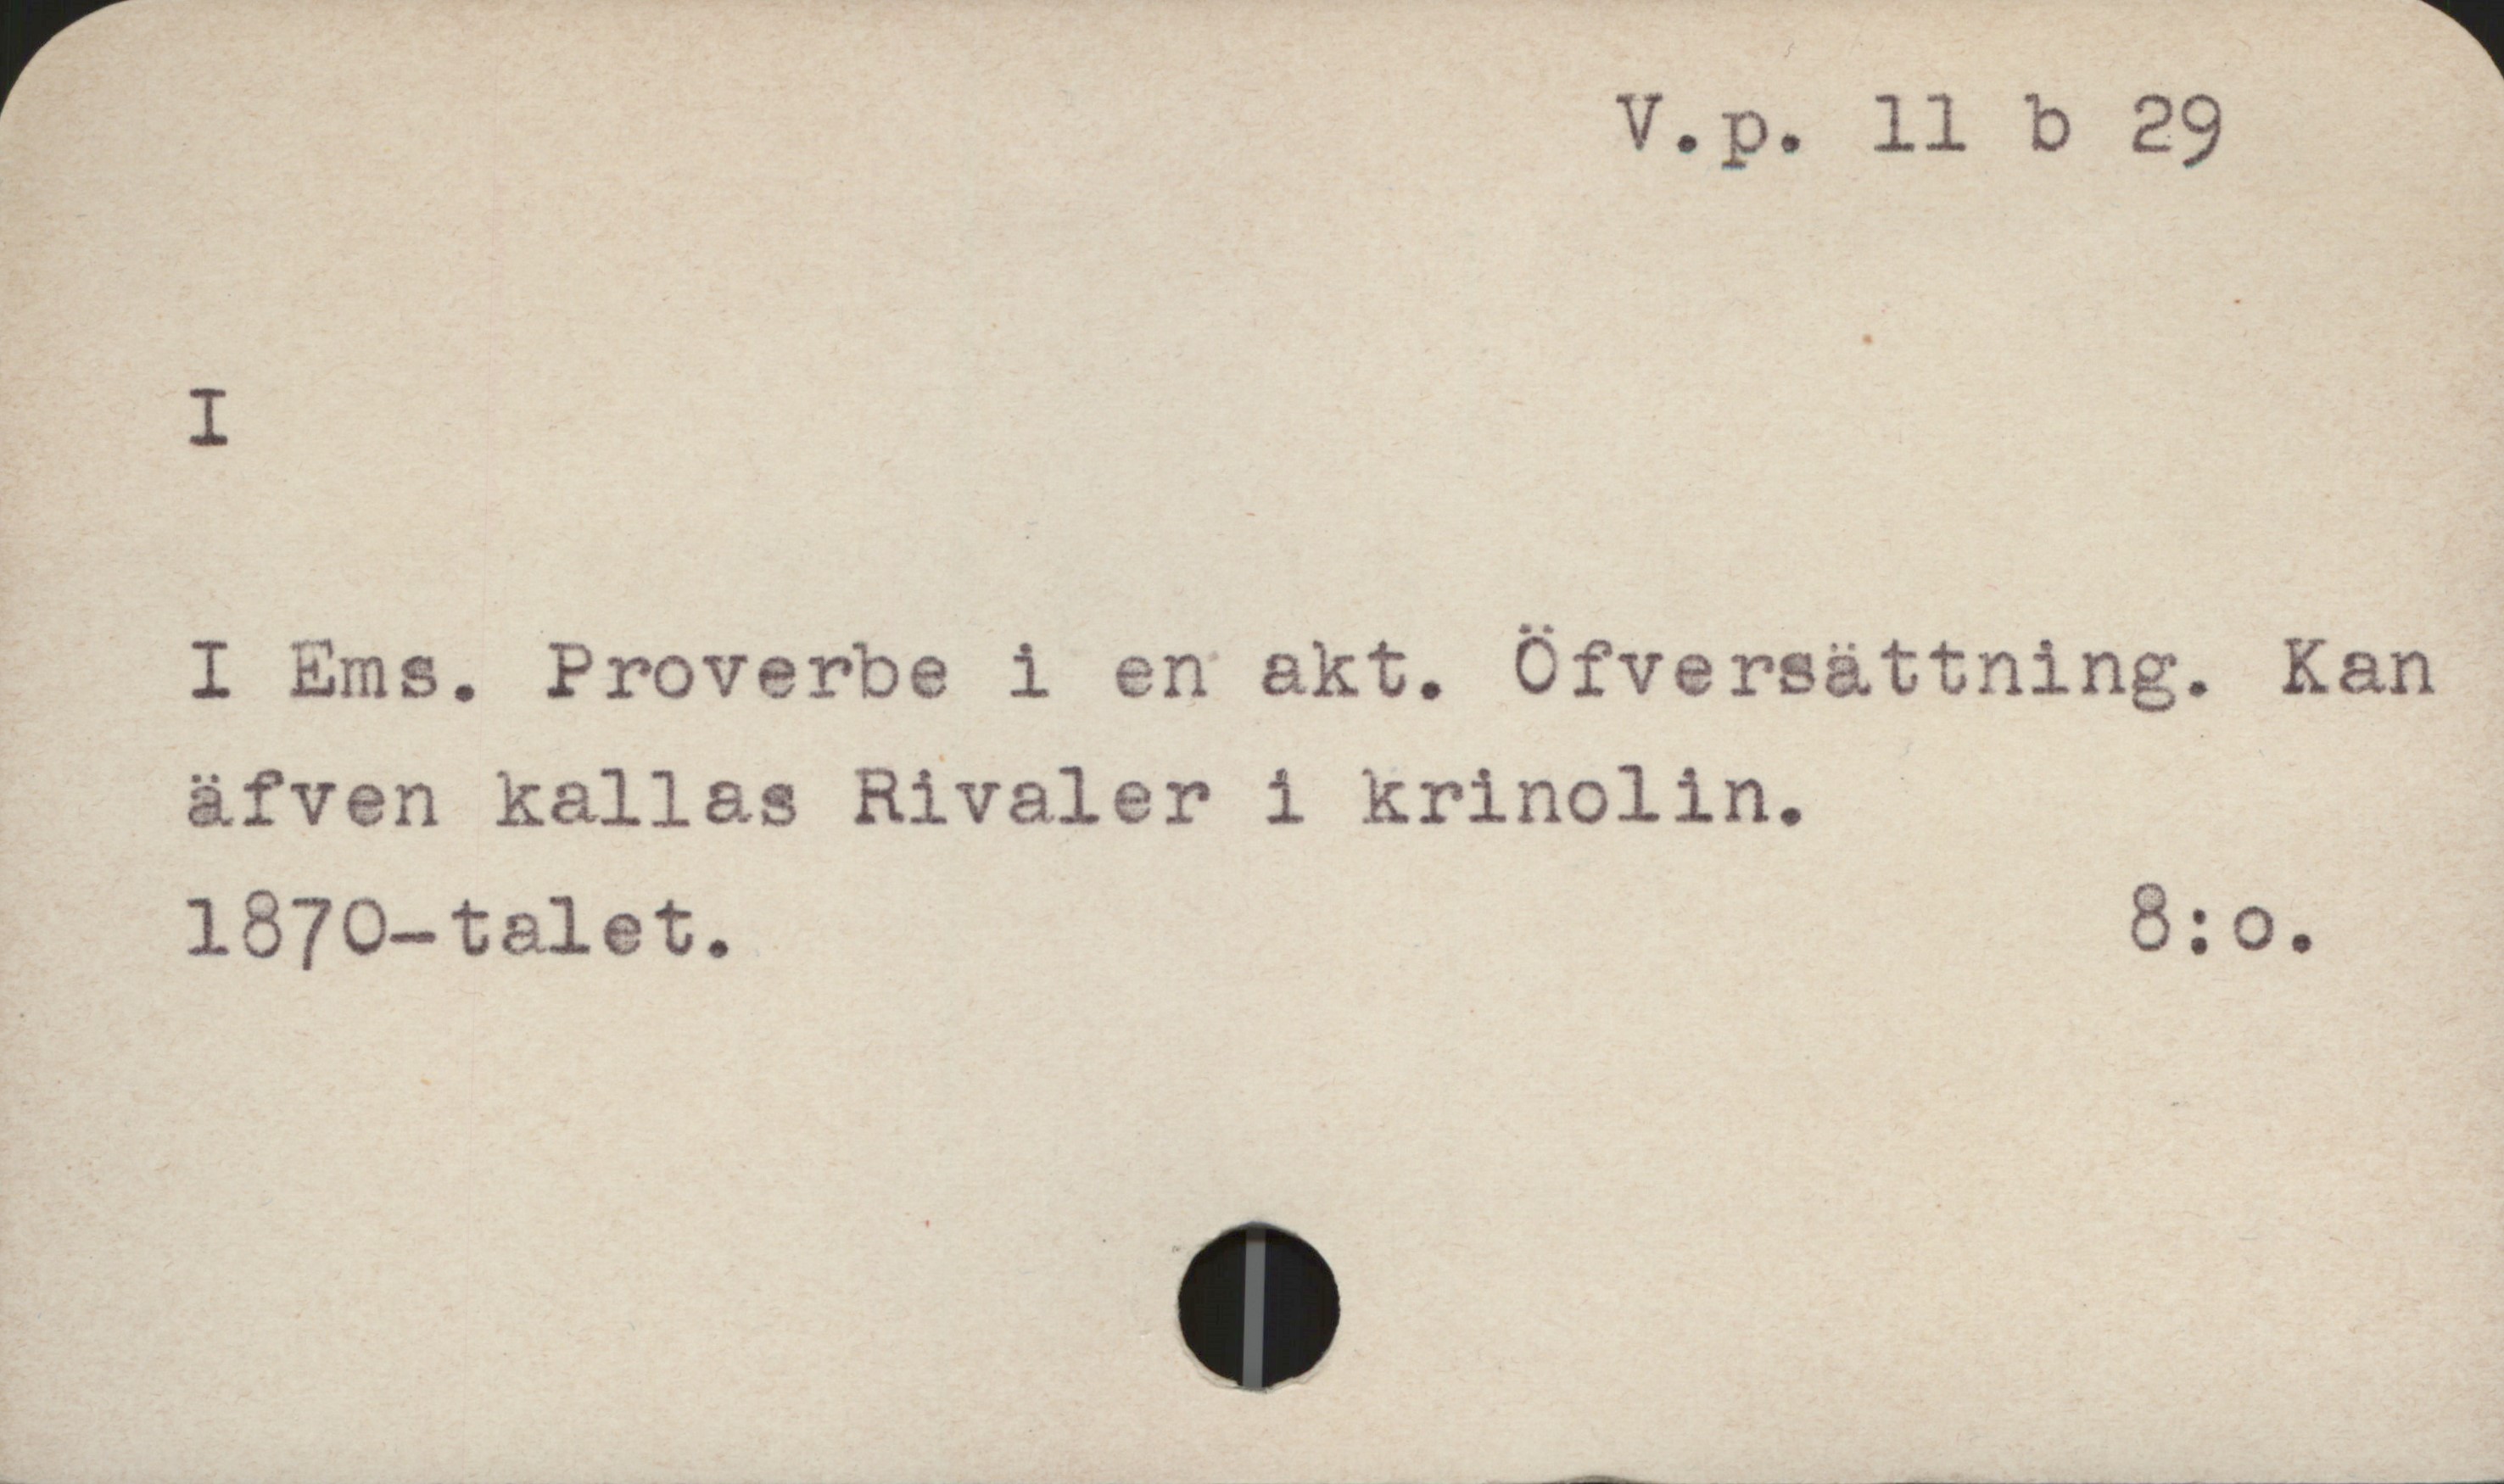 I V.p. 11 b 29
I
I Ems. Proverbe i en akt. Öfversättning. Kan
äfven kallas Rivaler i krinolin.,
1870-talet. 8: o.